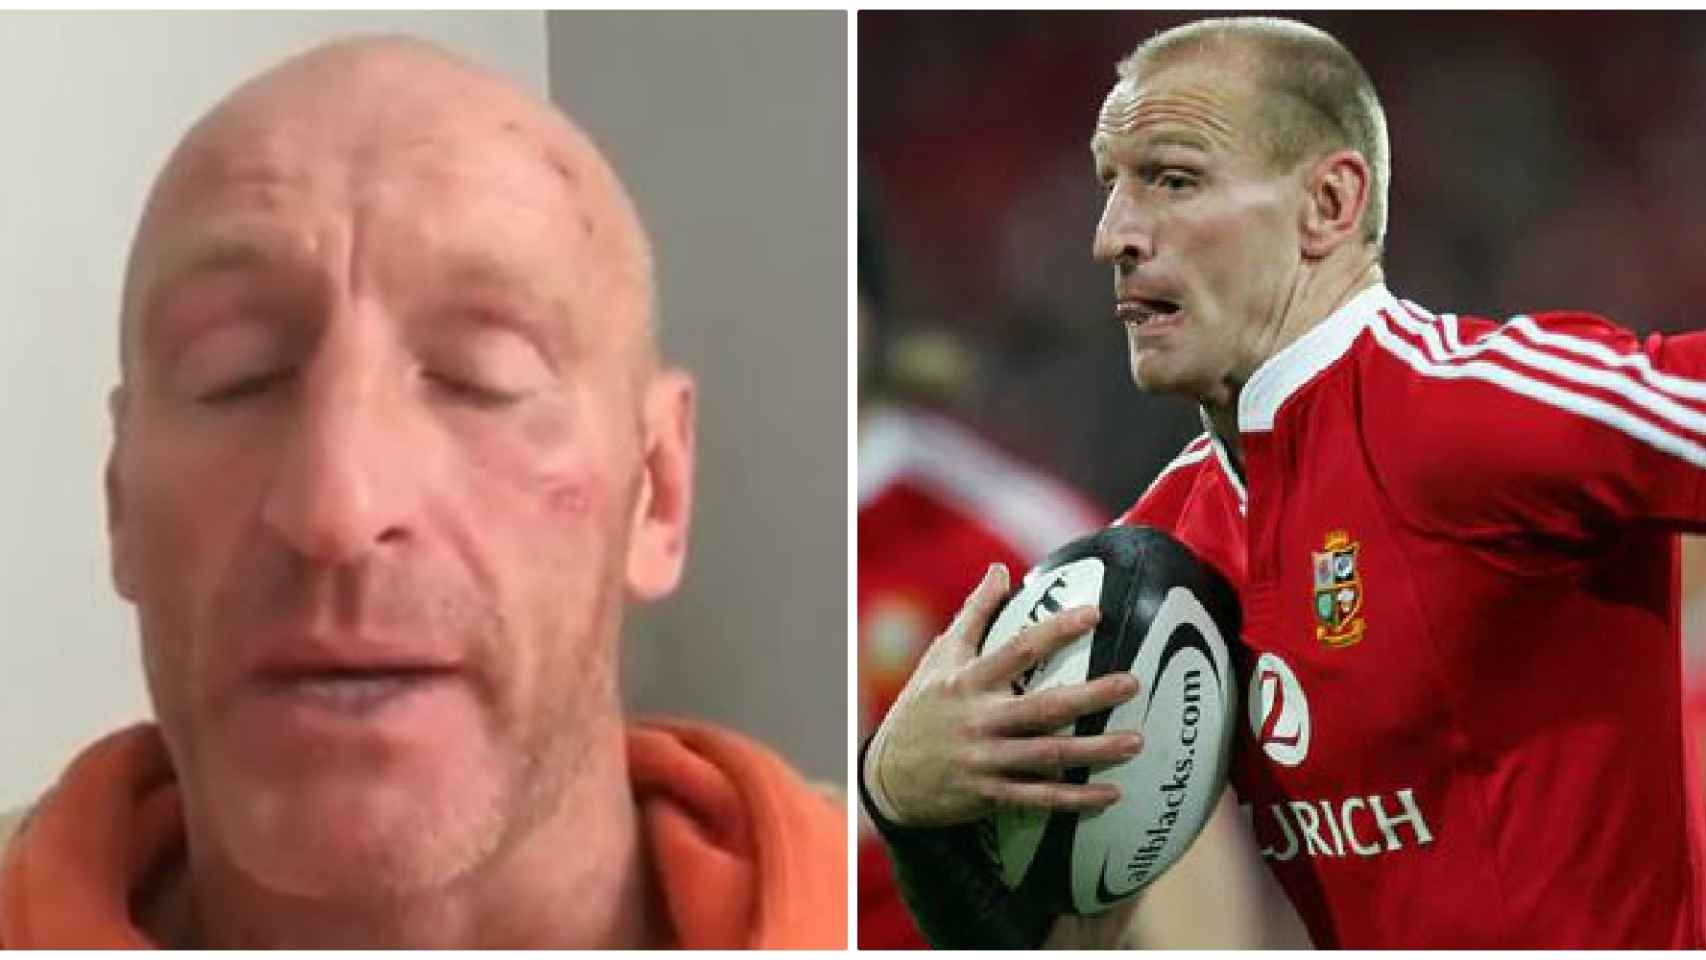 Gareth Thomas, el exjugador de rugby agredido.